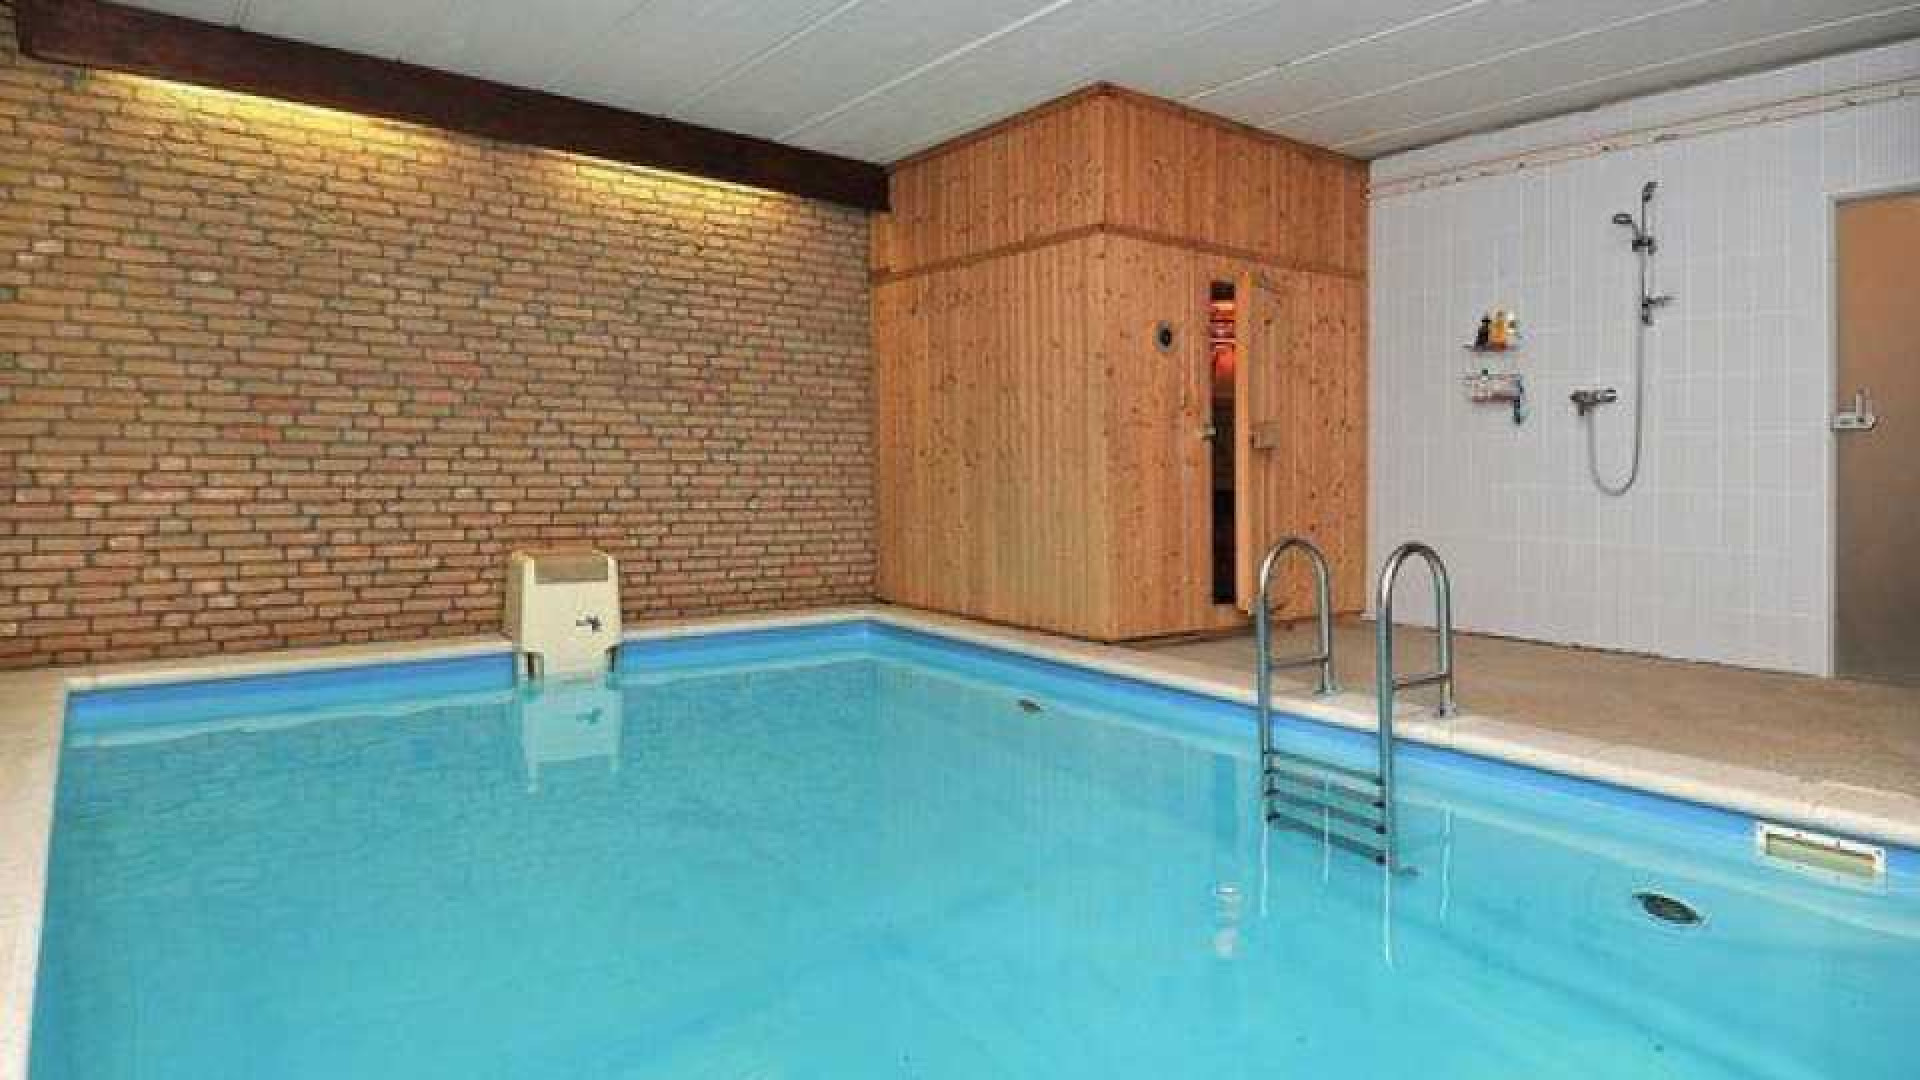 Binnenkijken in villa met zwembad en sauna van Rachel Hazes. Zie foto's 15